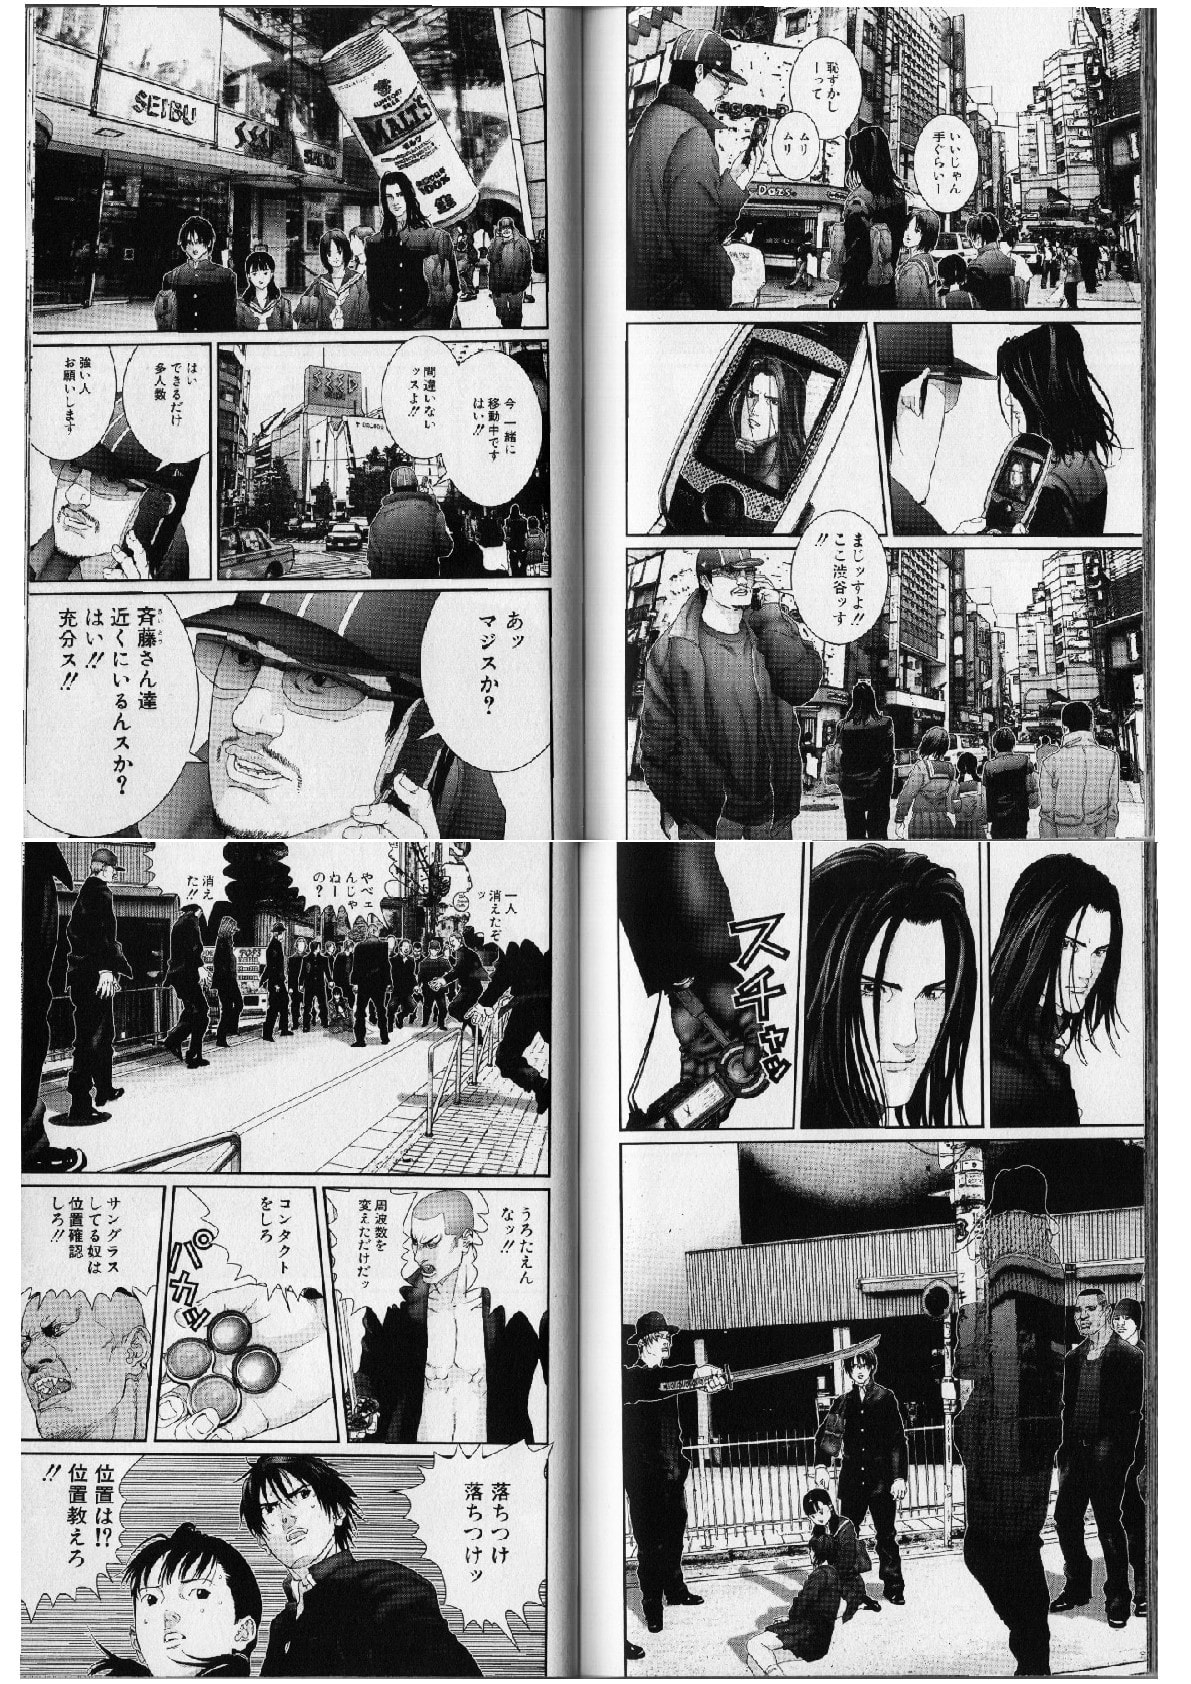 Gantzガンツ ヴァンパイア編 吸血鬼組織に 渋谷で発見されてしまう泉 個人的に気に入った漫画だったり 書籍だったりを気まぐれで紹介するモトブログおじさん